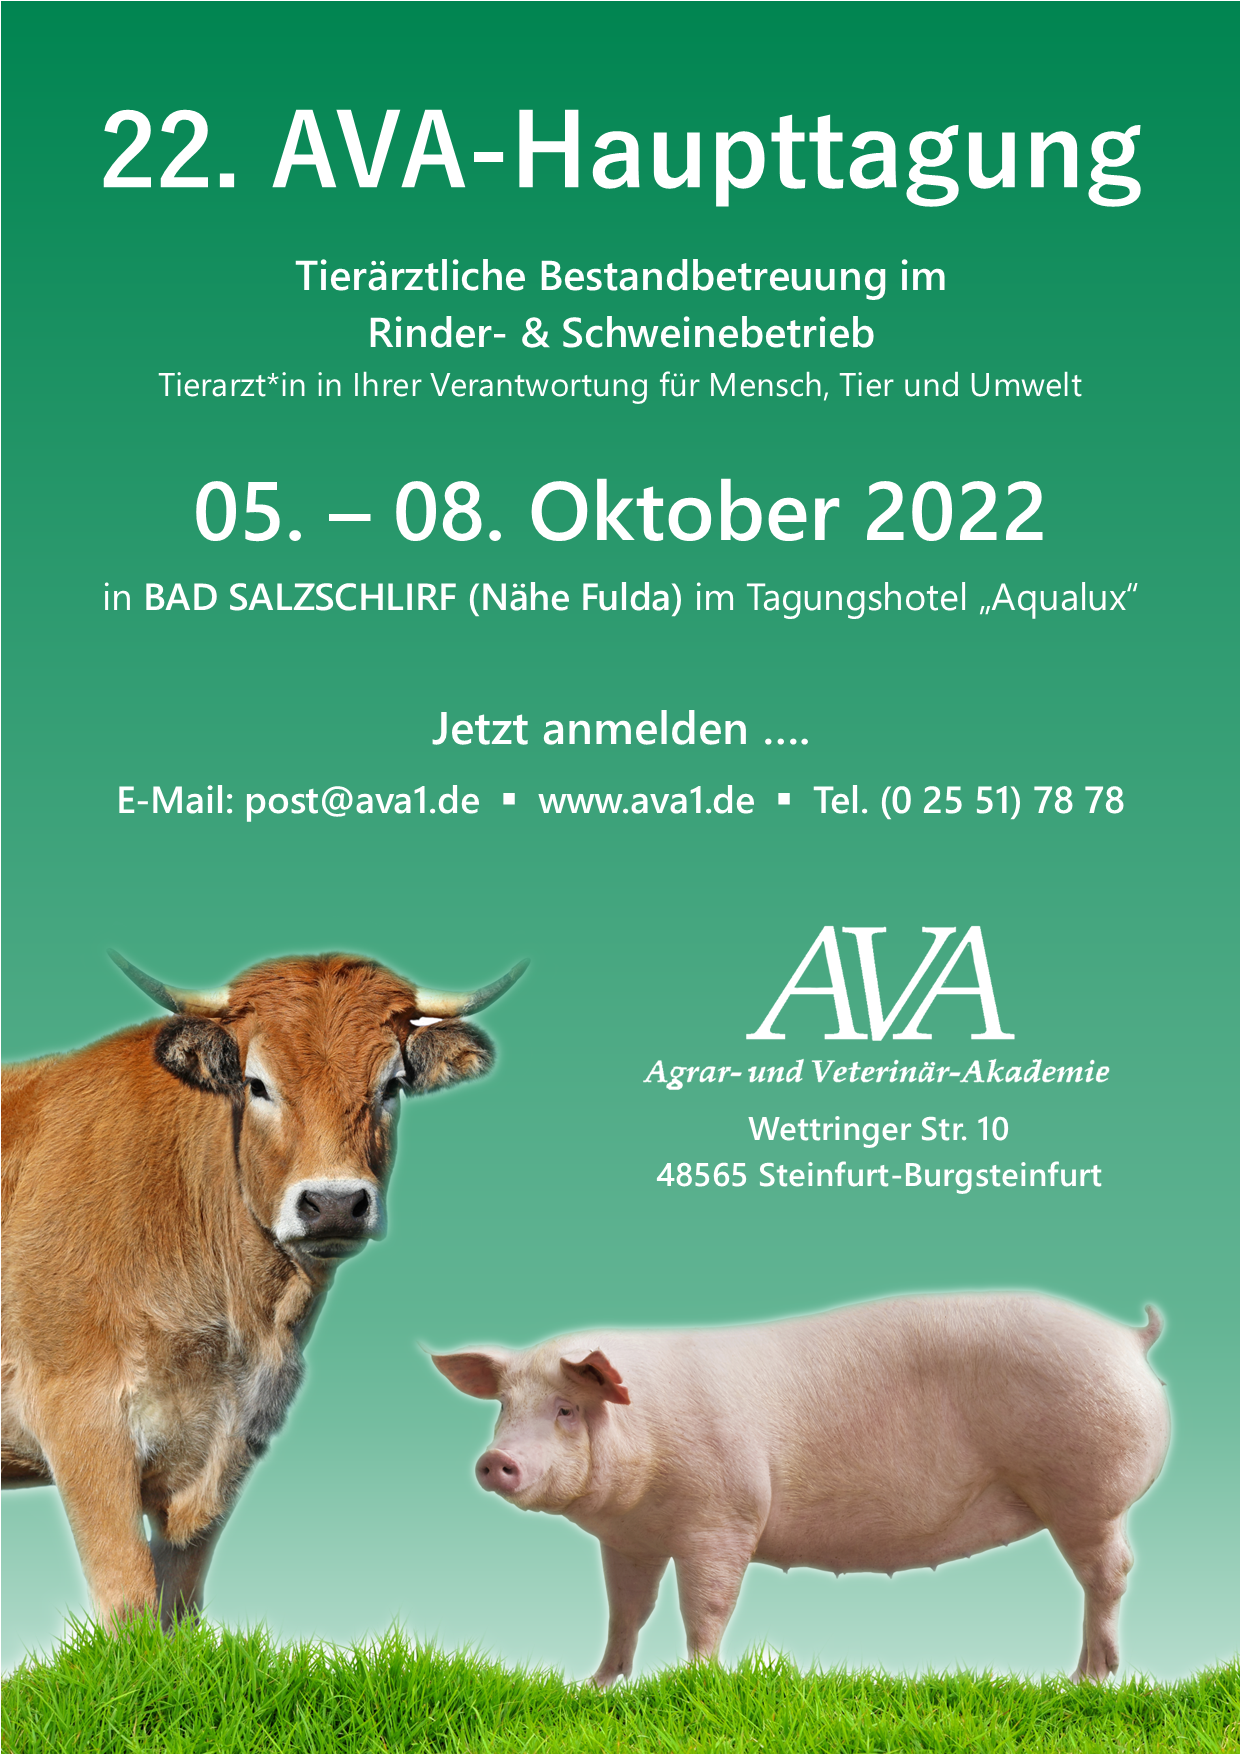 Die Einladung für Tierärzt*innen zur Tagung | Freie-Pressemitteilungen.de